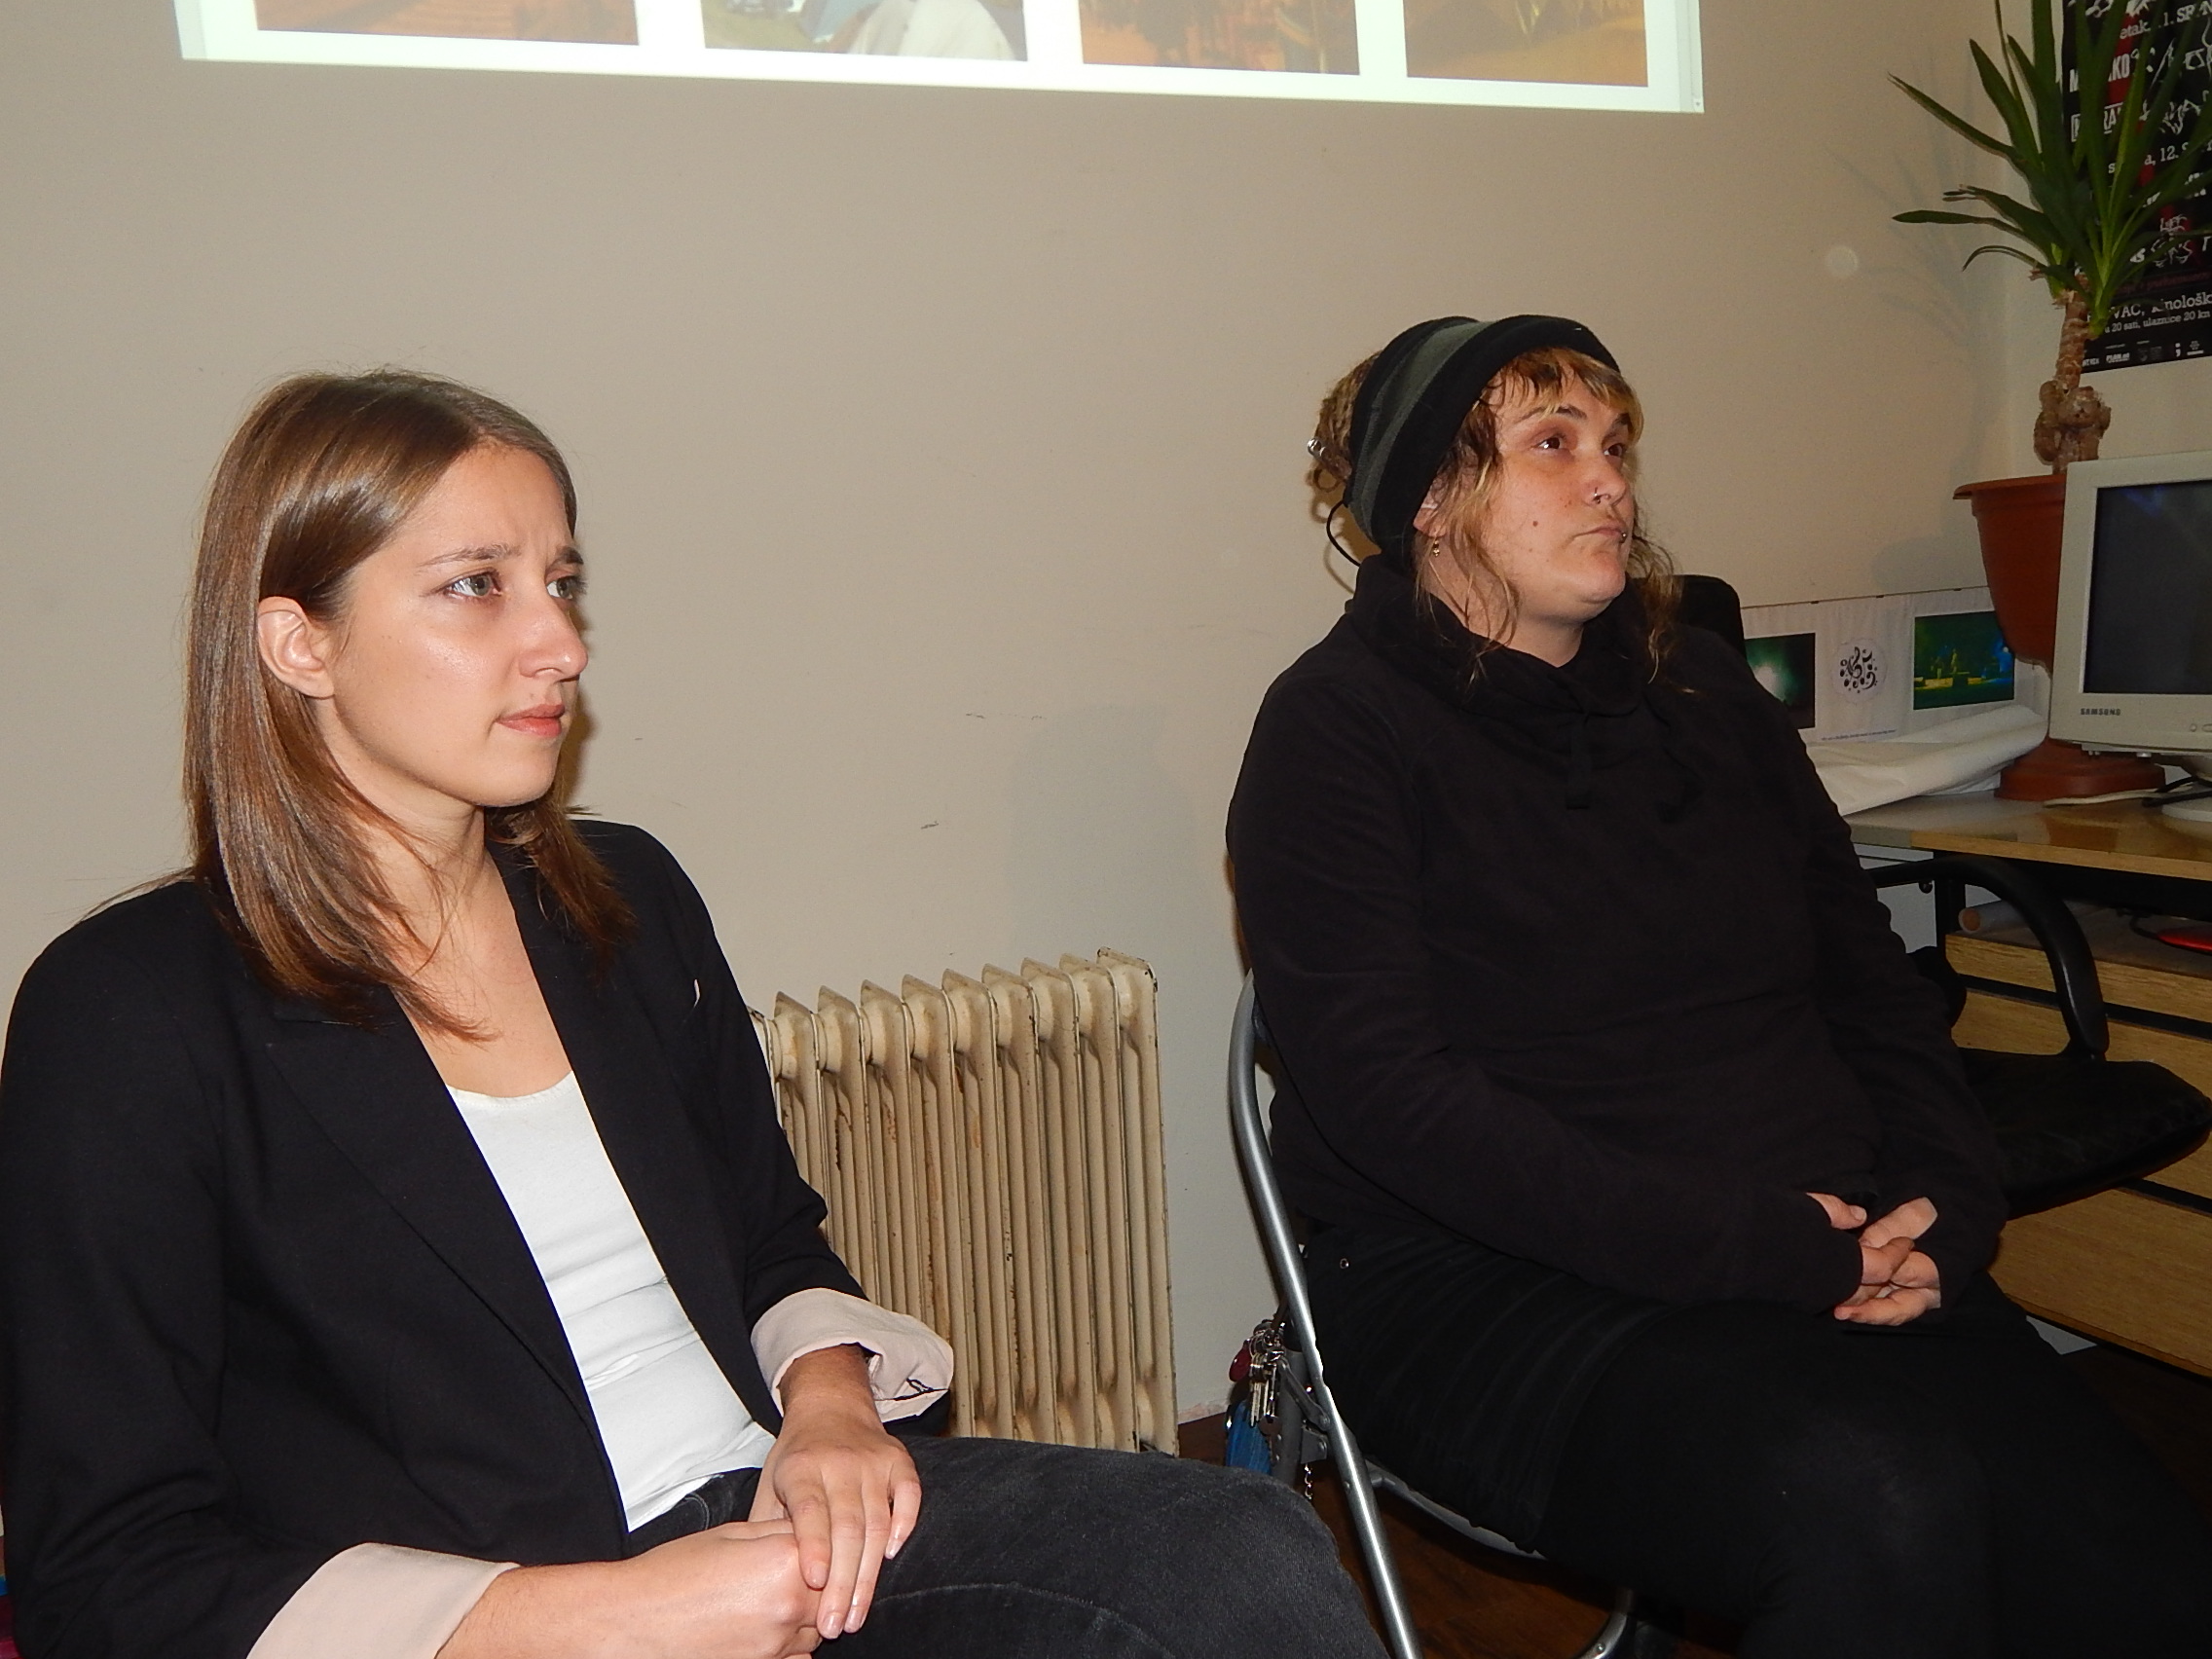 Sunčica Brnardić i Sanja Burlović predstavile inicijativu "Welcome!/Dobrodošli!" u info-shopu Male urbane zajednice u Karlovcu 2. studenog 2015. Foto: Marin Bakić